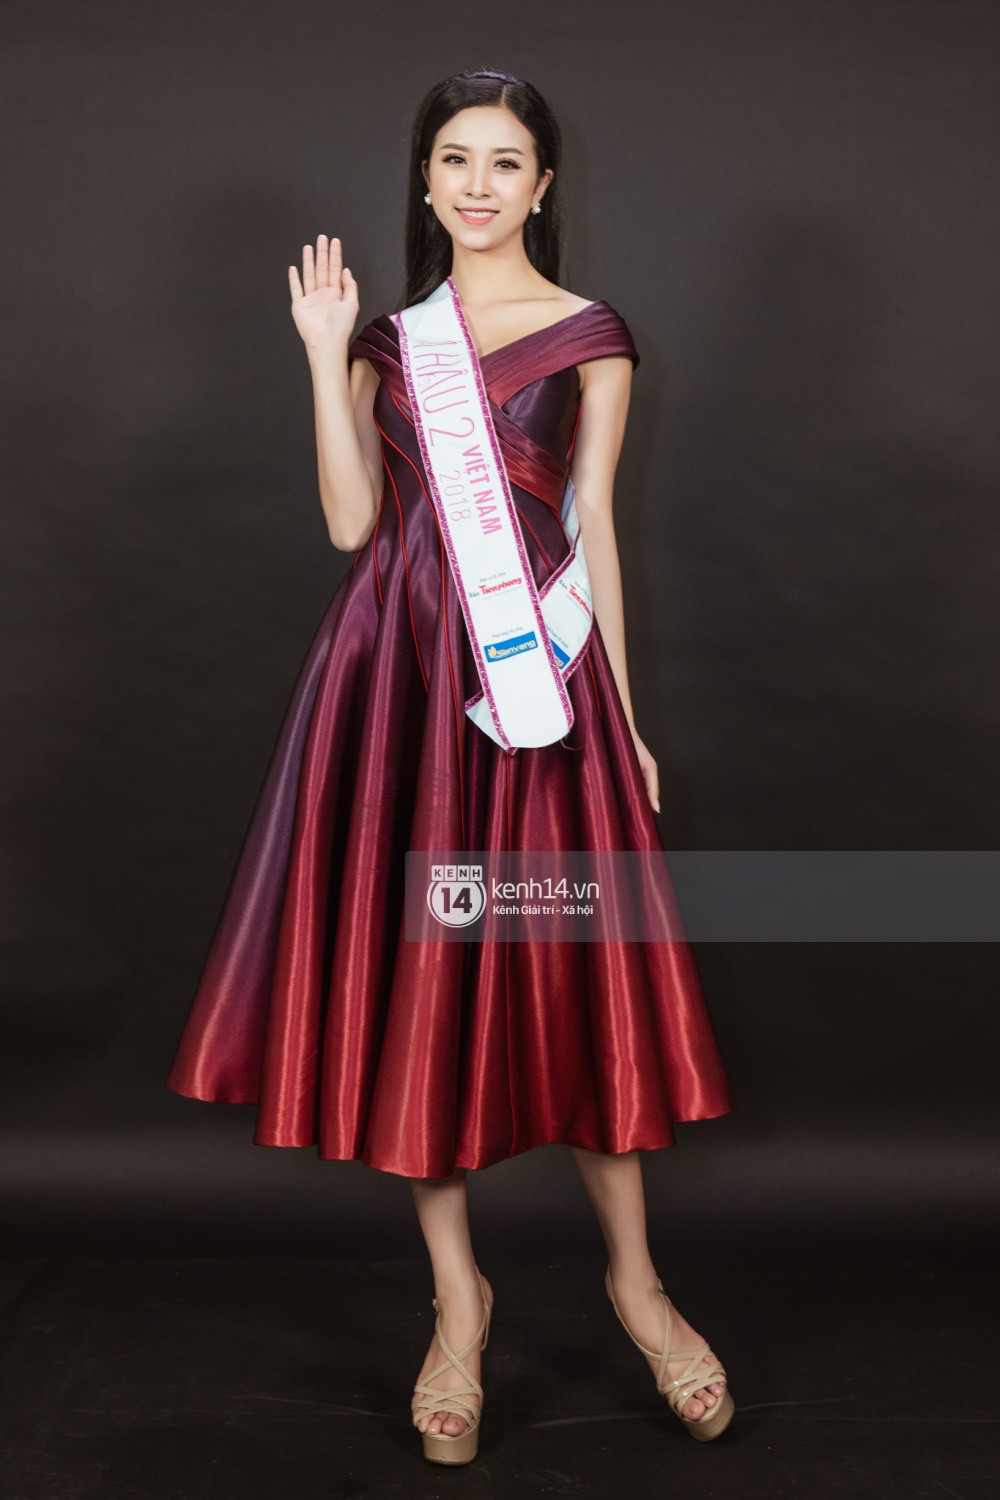 Ngắm cận vẻ đẹp của Top 3 Hoa hậu Việt Nam 2018: Mỹ nhân 2000 được khen sắc sảo, 2 nàng Á mười phân vẹn mười - Ảnh 12.